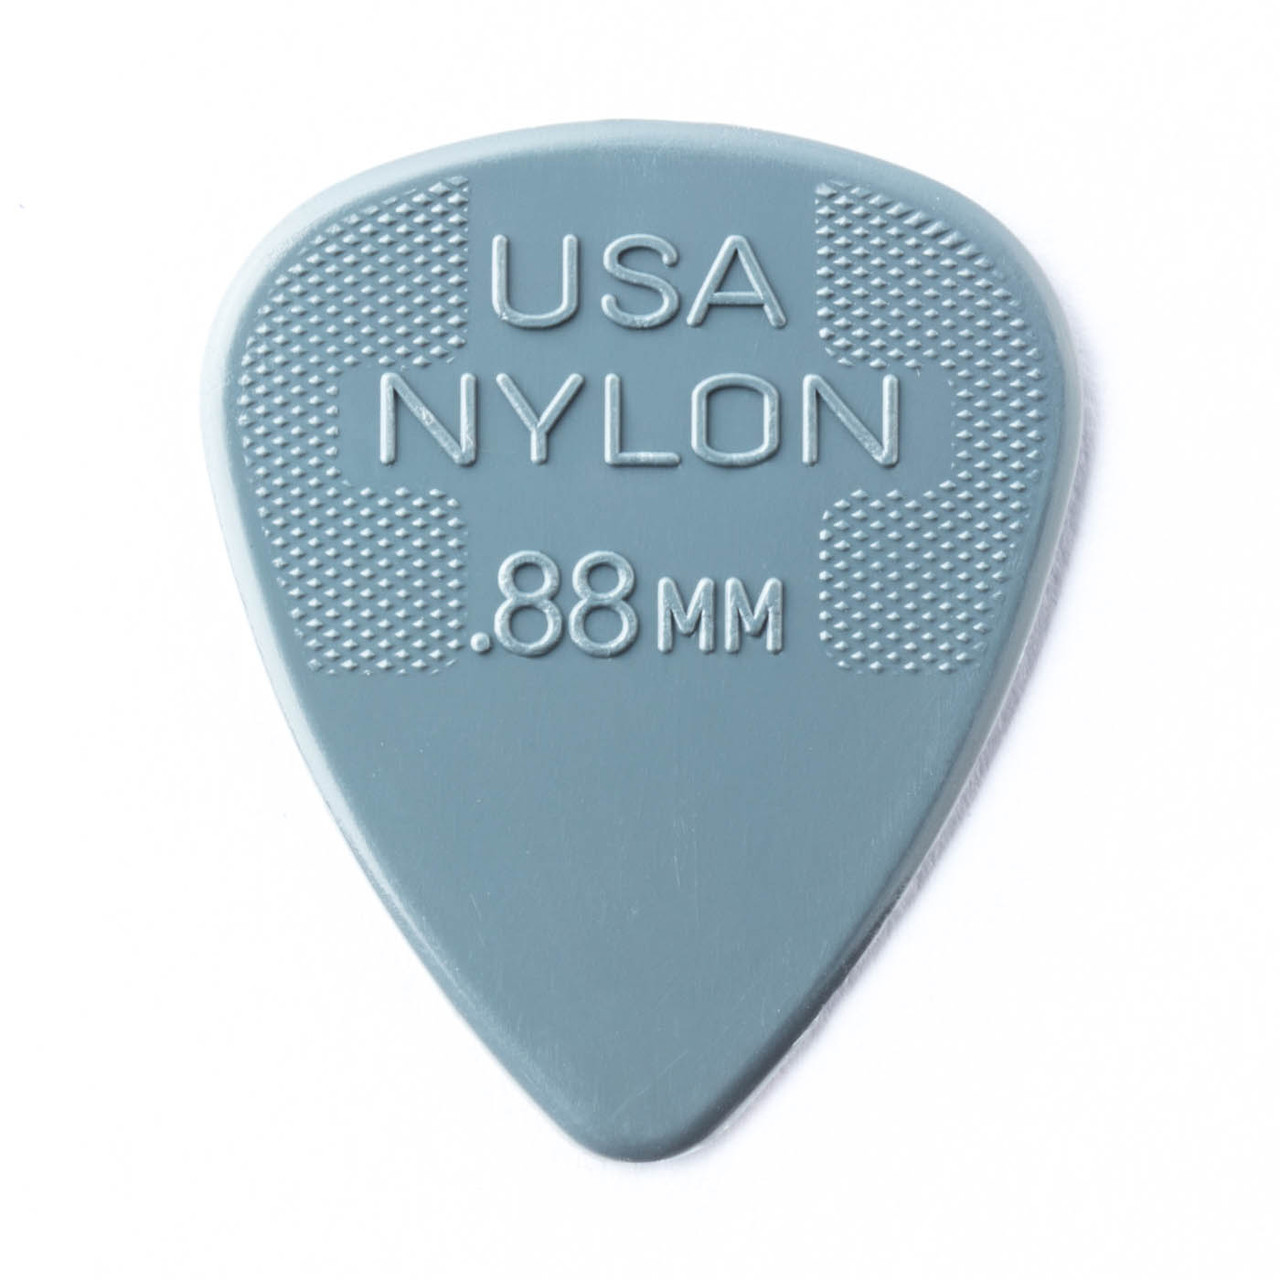 Jim Dunlop Nylon Standard Pick .88mm (12pk)